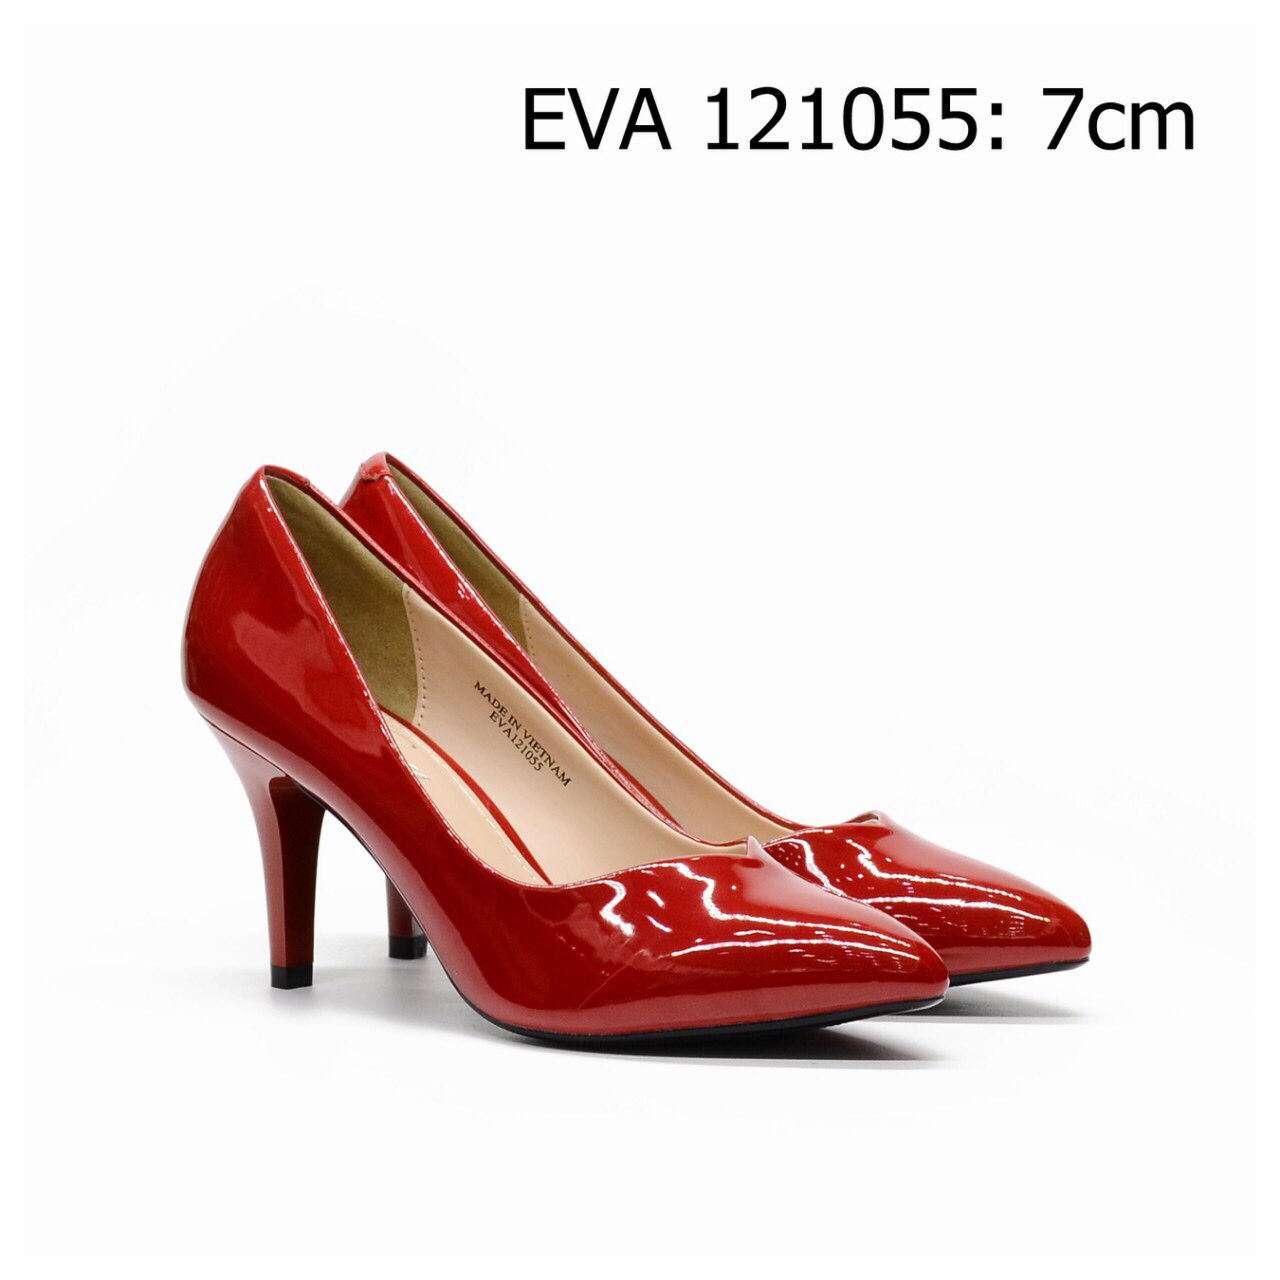 Giày cao gót EVA121055 kiểu dáng thanh nhã, thiết kế da bóng nổi bật, tôn dáng